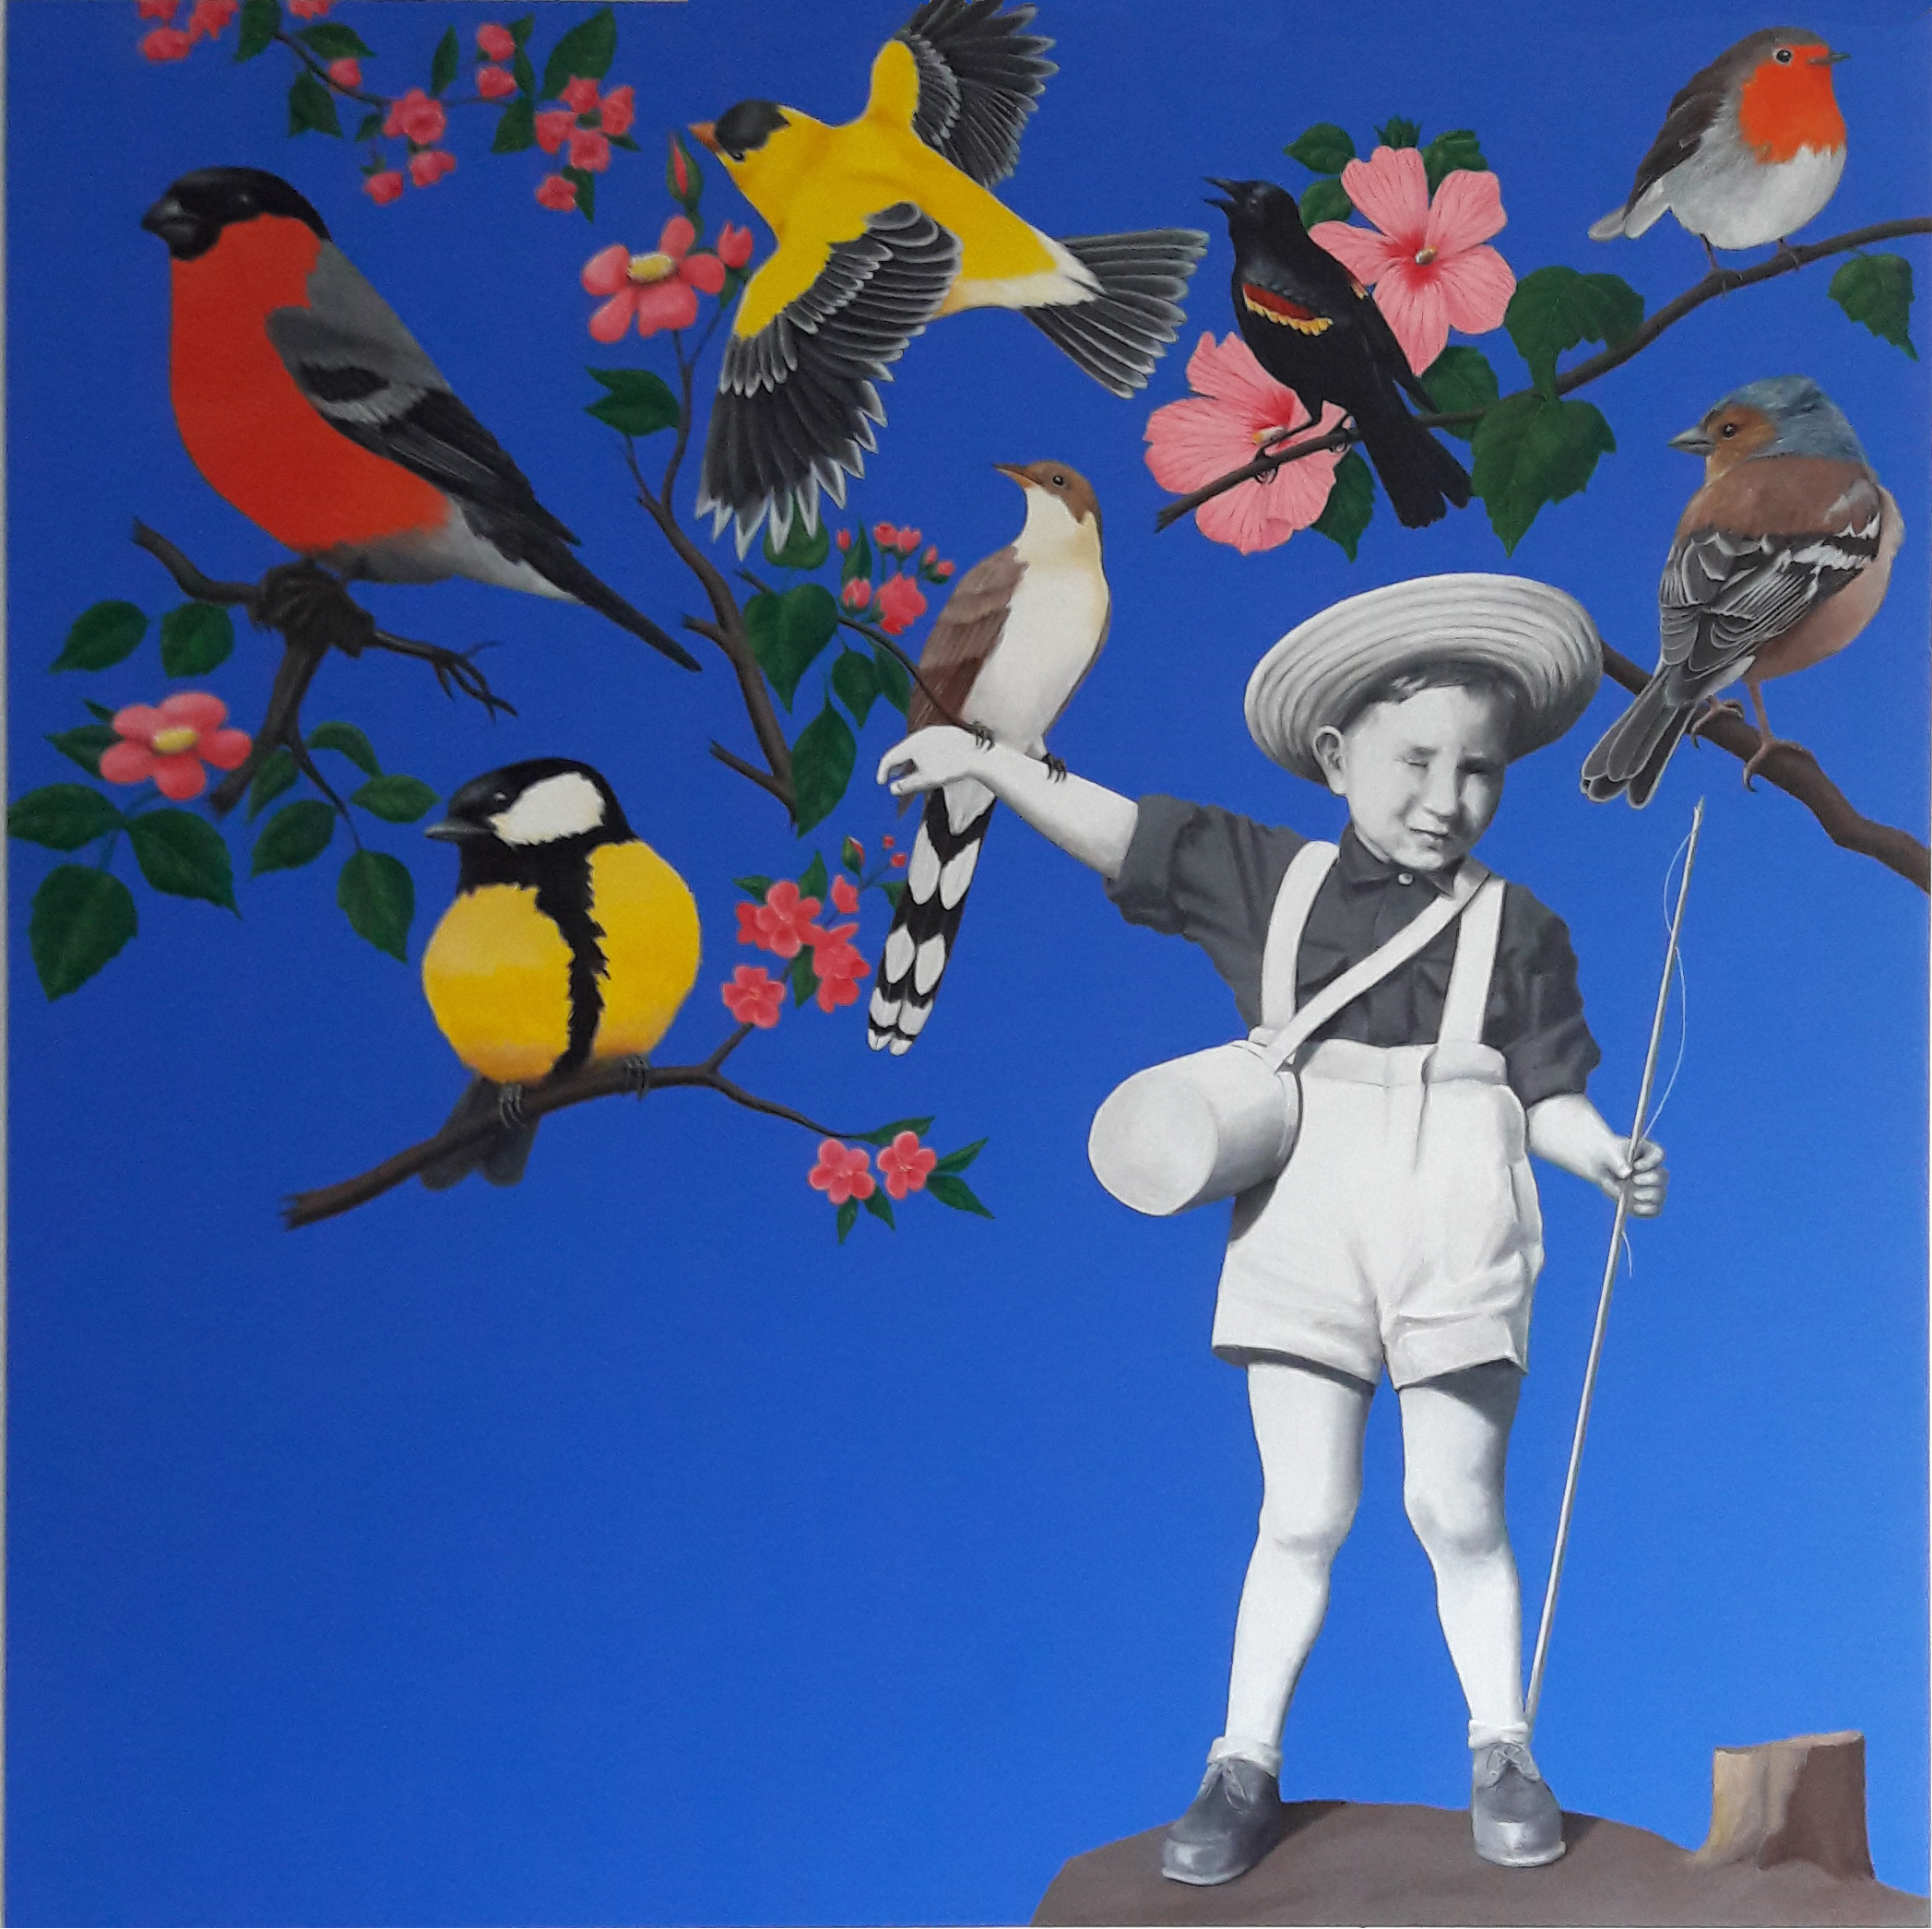 Le pêcheur d'oiseaux - acrylique sur toile -120x120 - juillet 2015